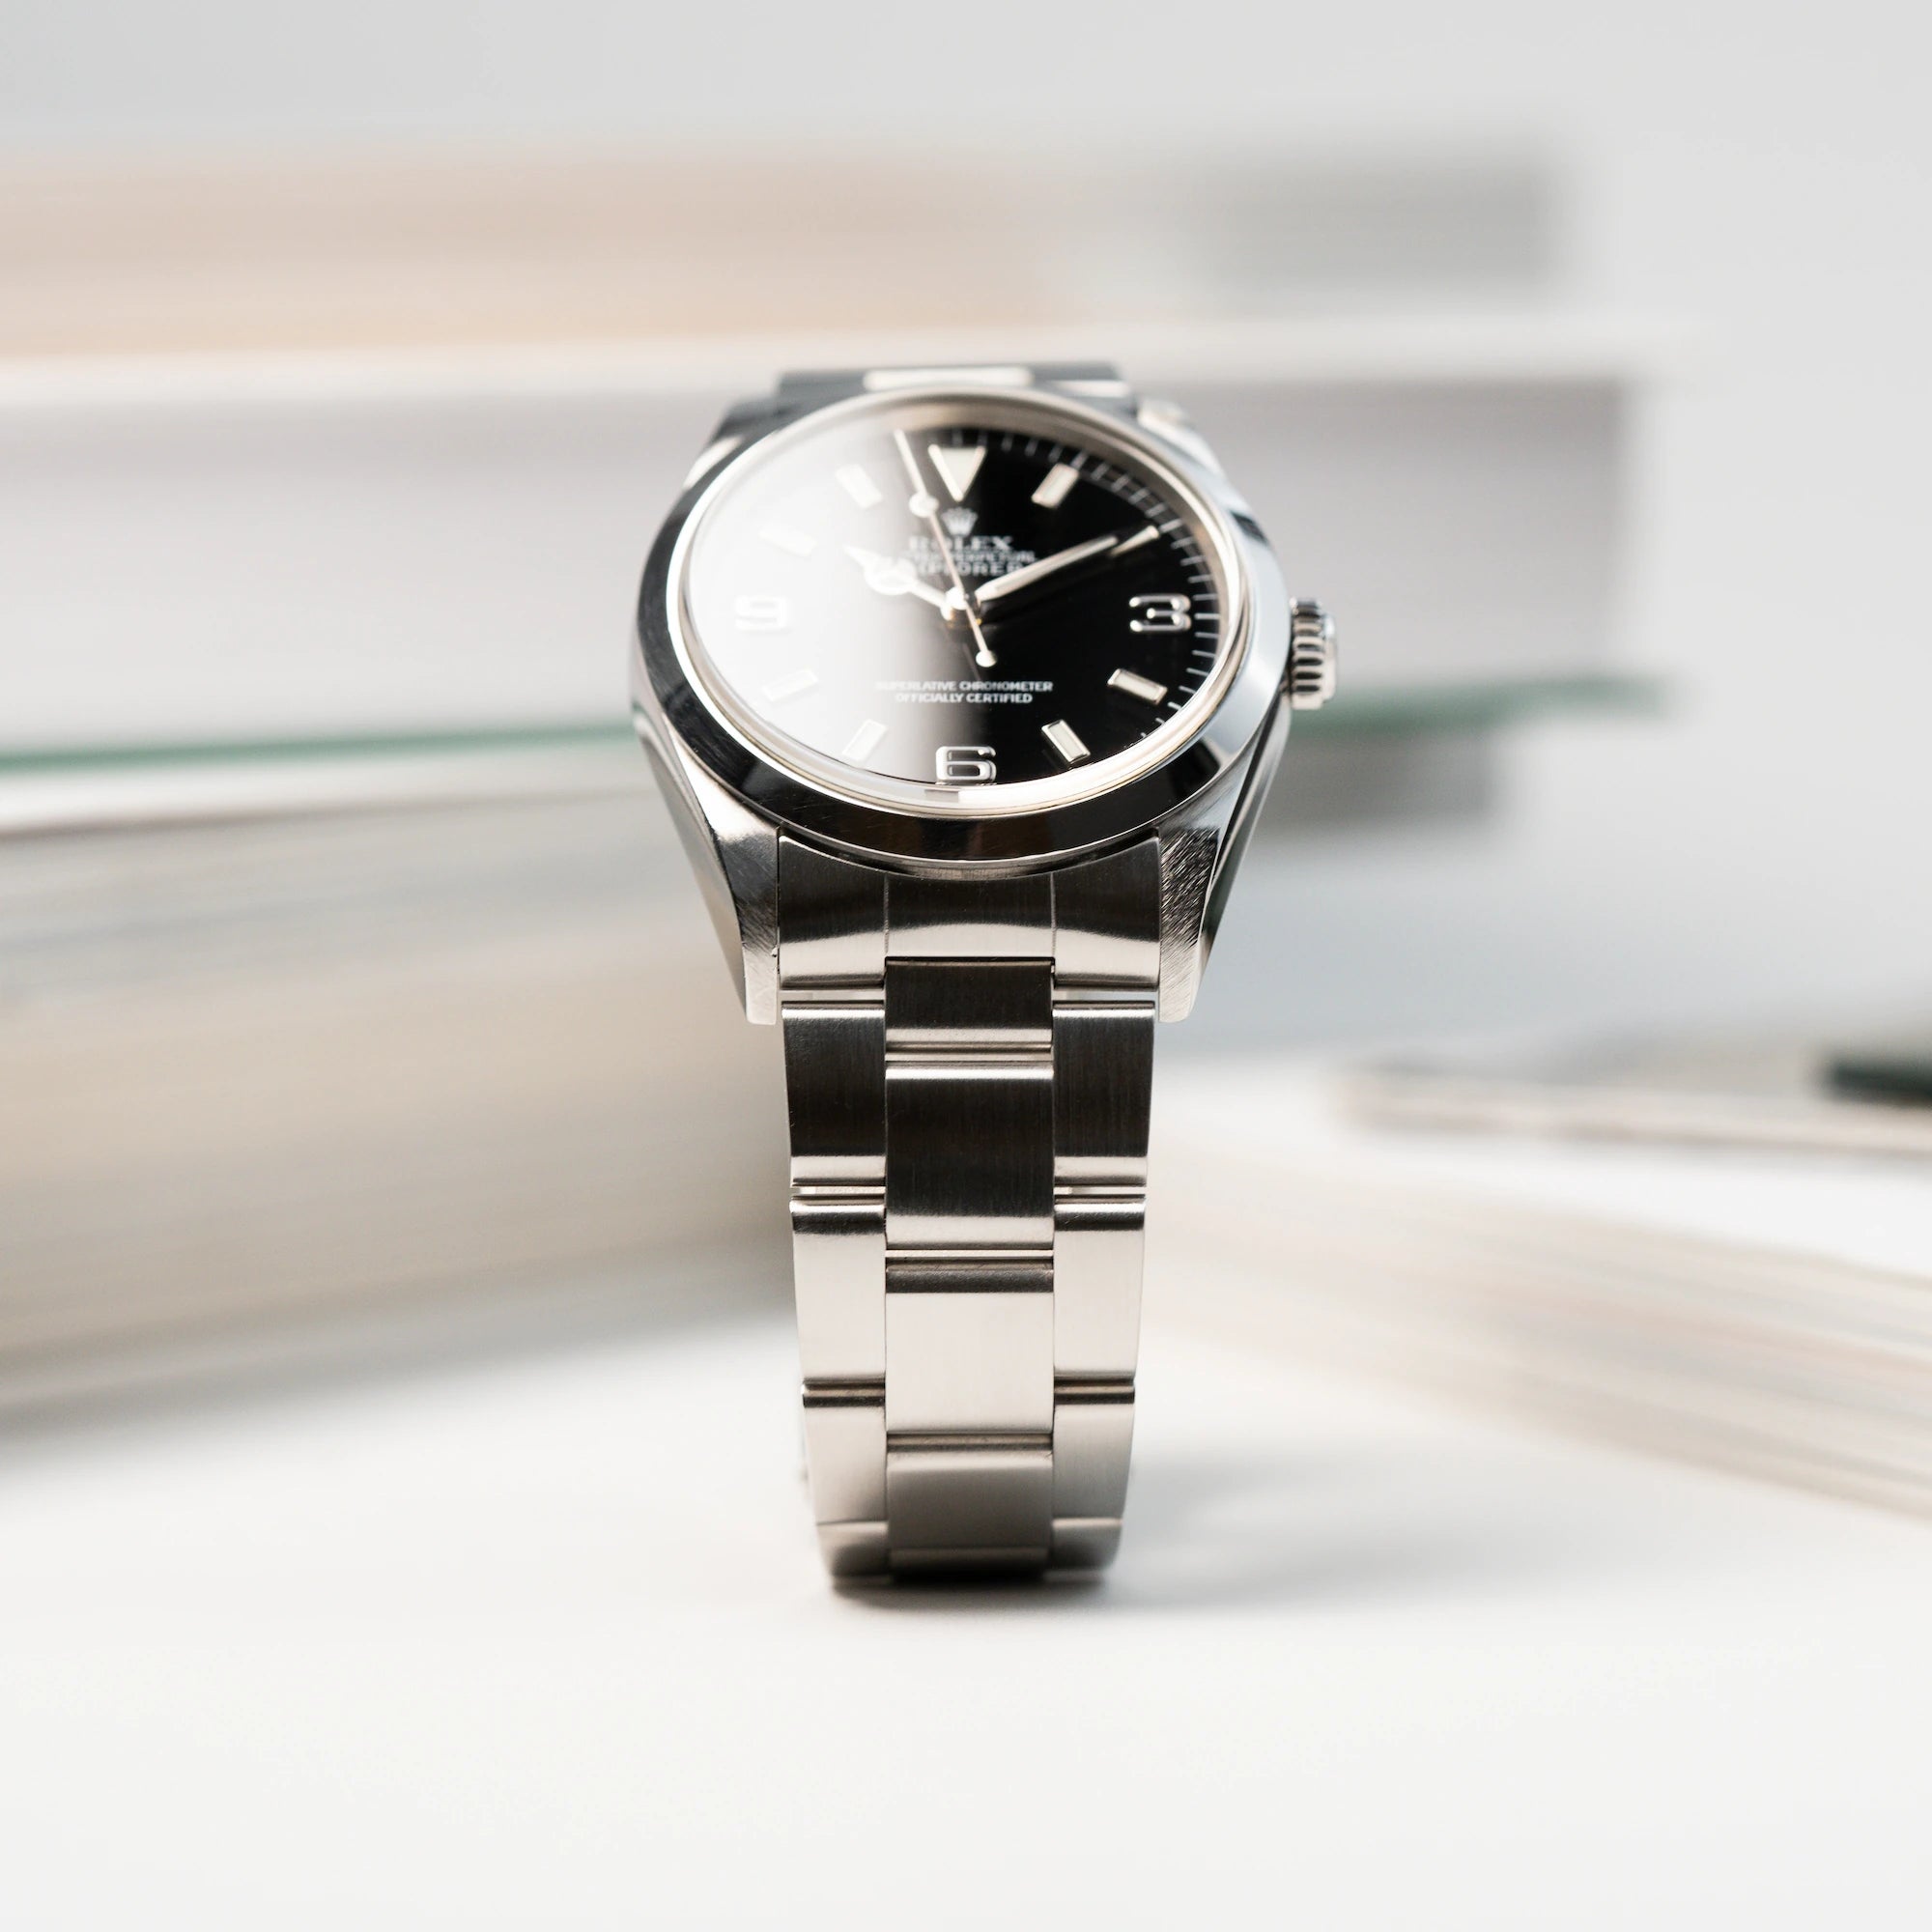 Produktfotografie der Rolex Explorer 1, Referenz 14270, mit Lichtreflexion im Uhrenglas